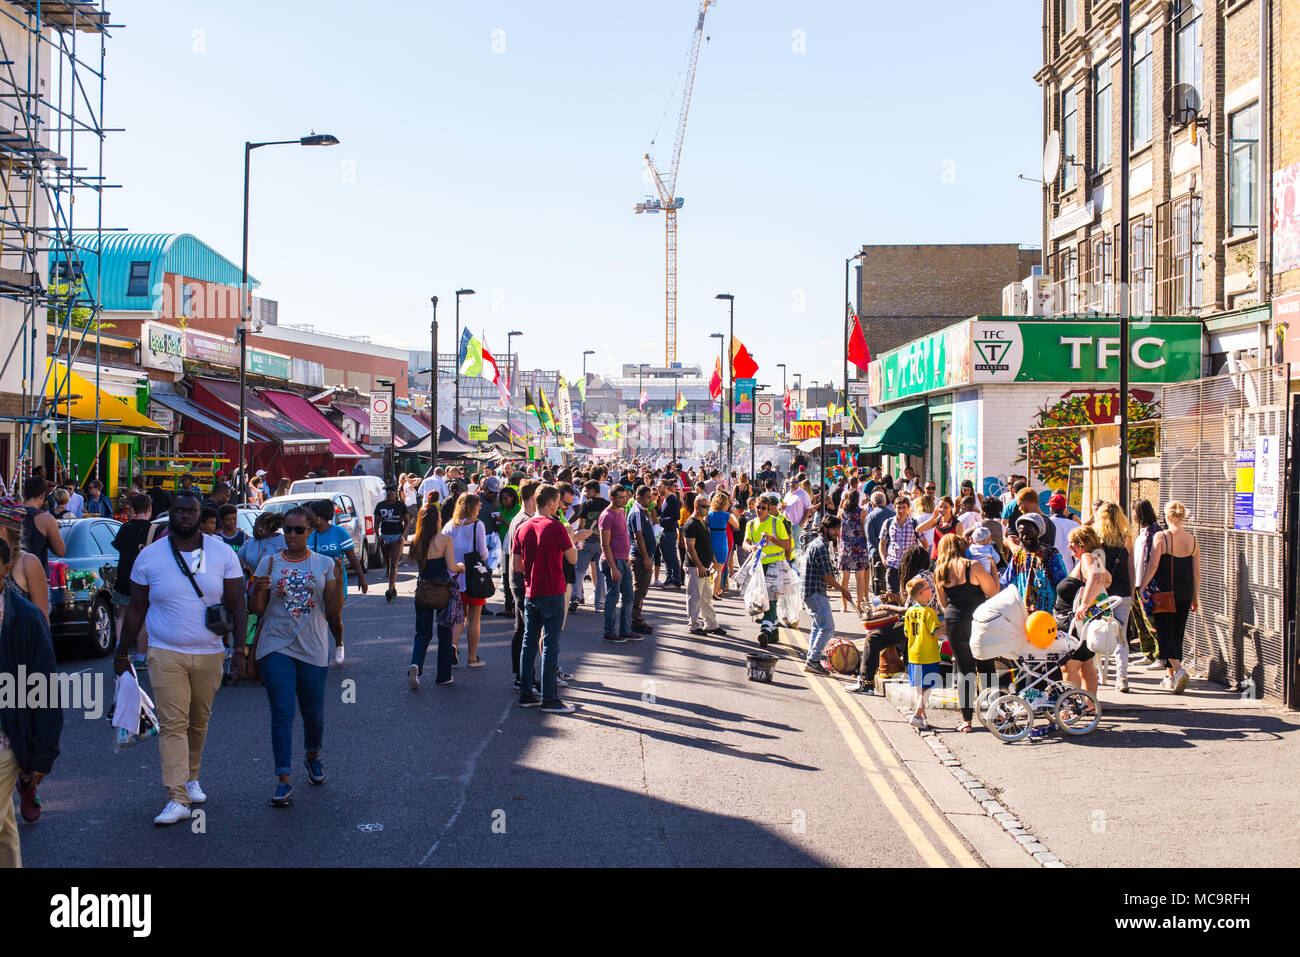 Hackney, Londra, Regno Unito - 11 settembre 2016. La gente a piedi attorno a chioschi e sistemi audio durante il carnevale di Hackney 2016 in Ridley Road. Foto Stock